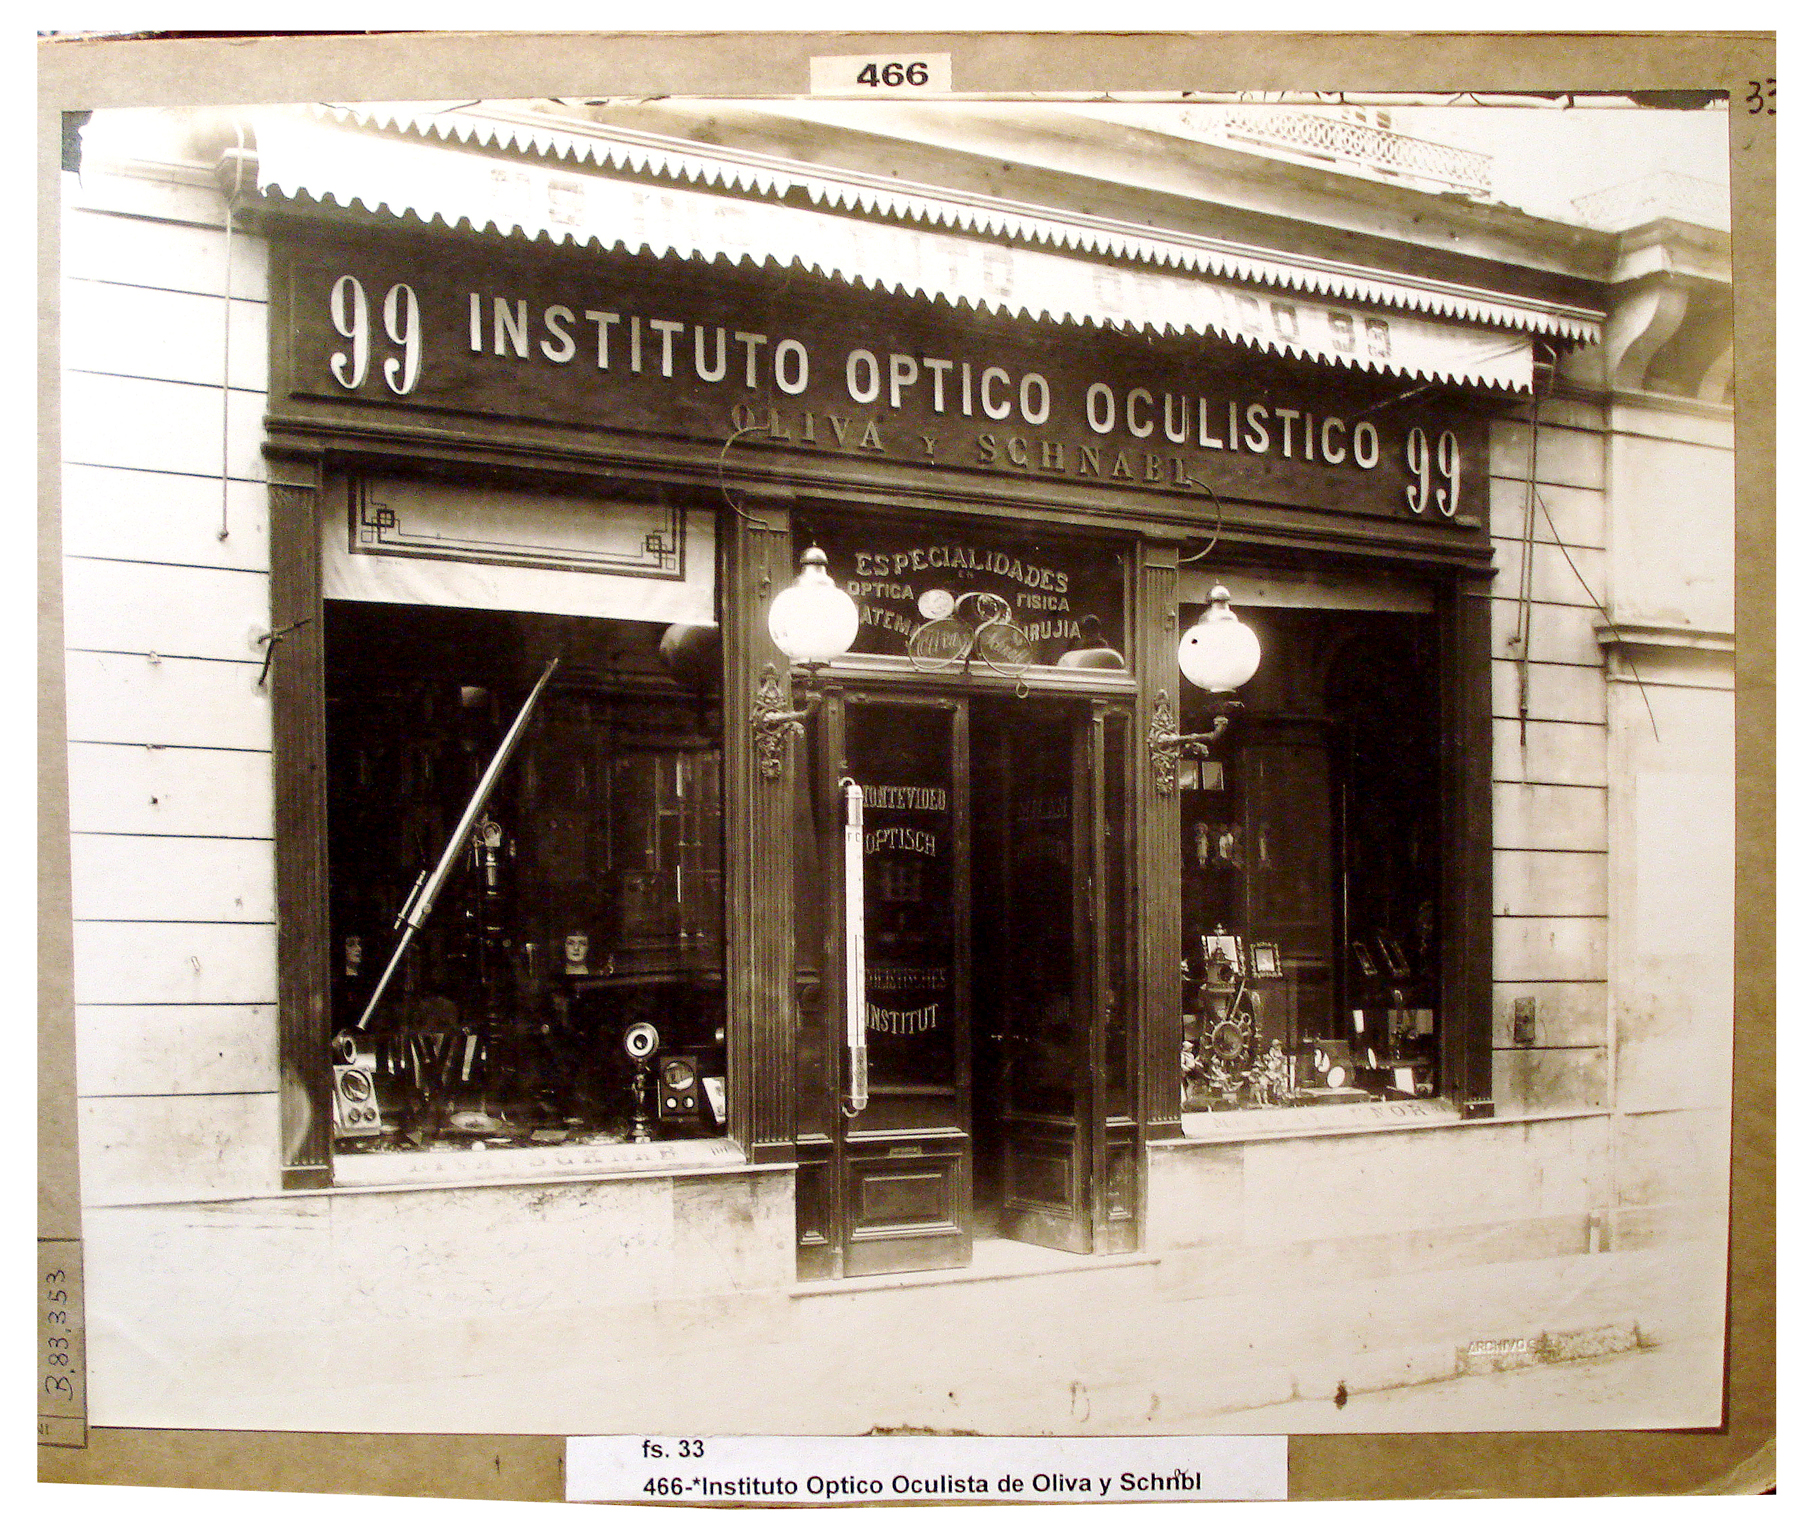 Instituto Óptico Oculístico de Oliva y Schnabl